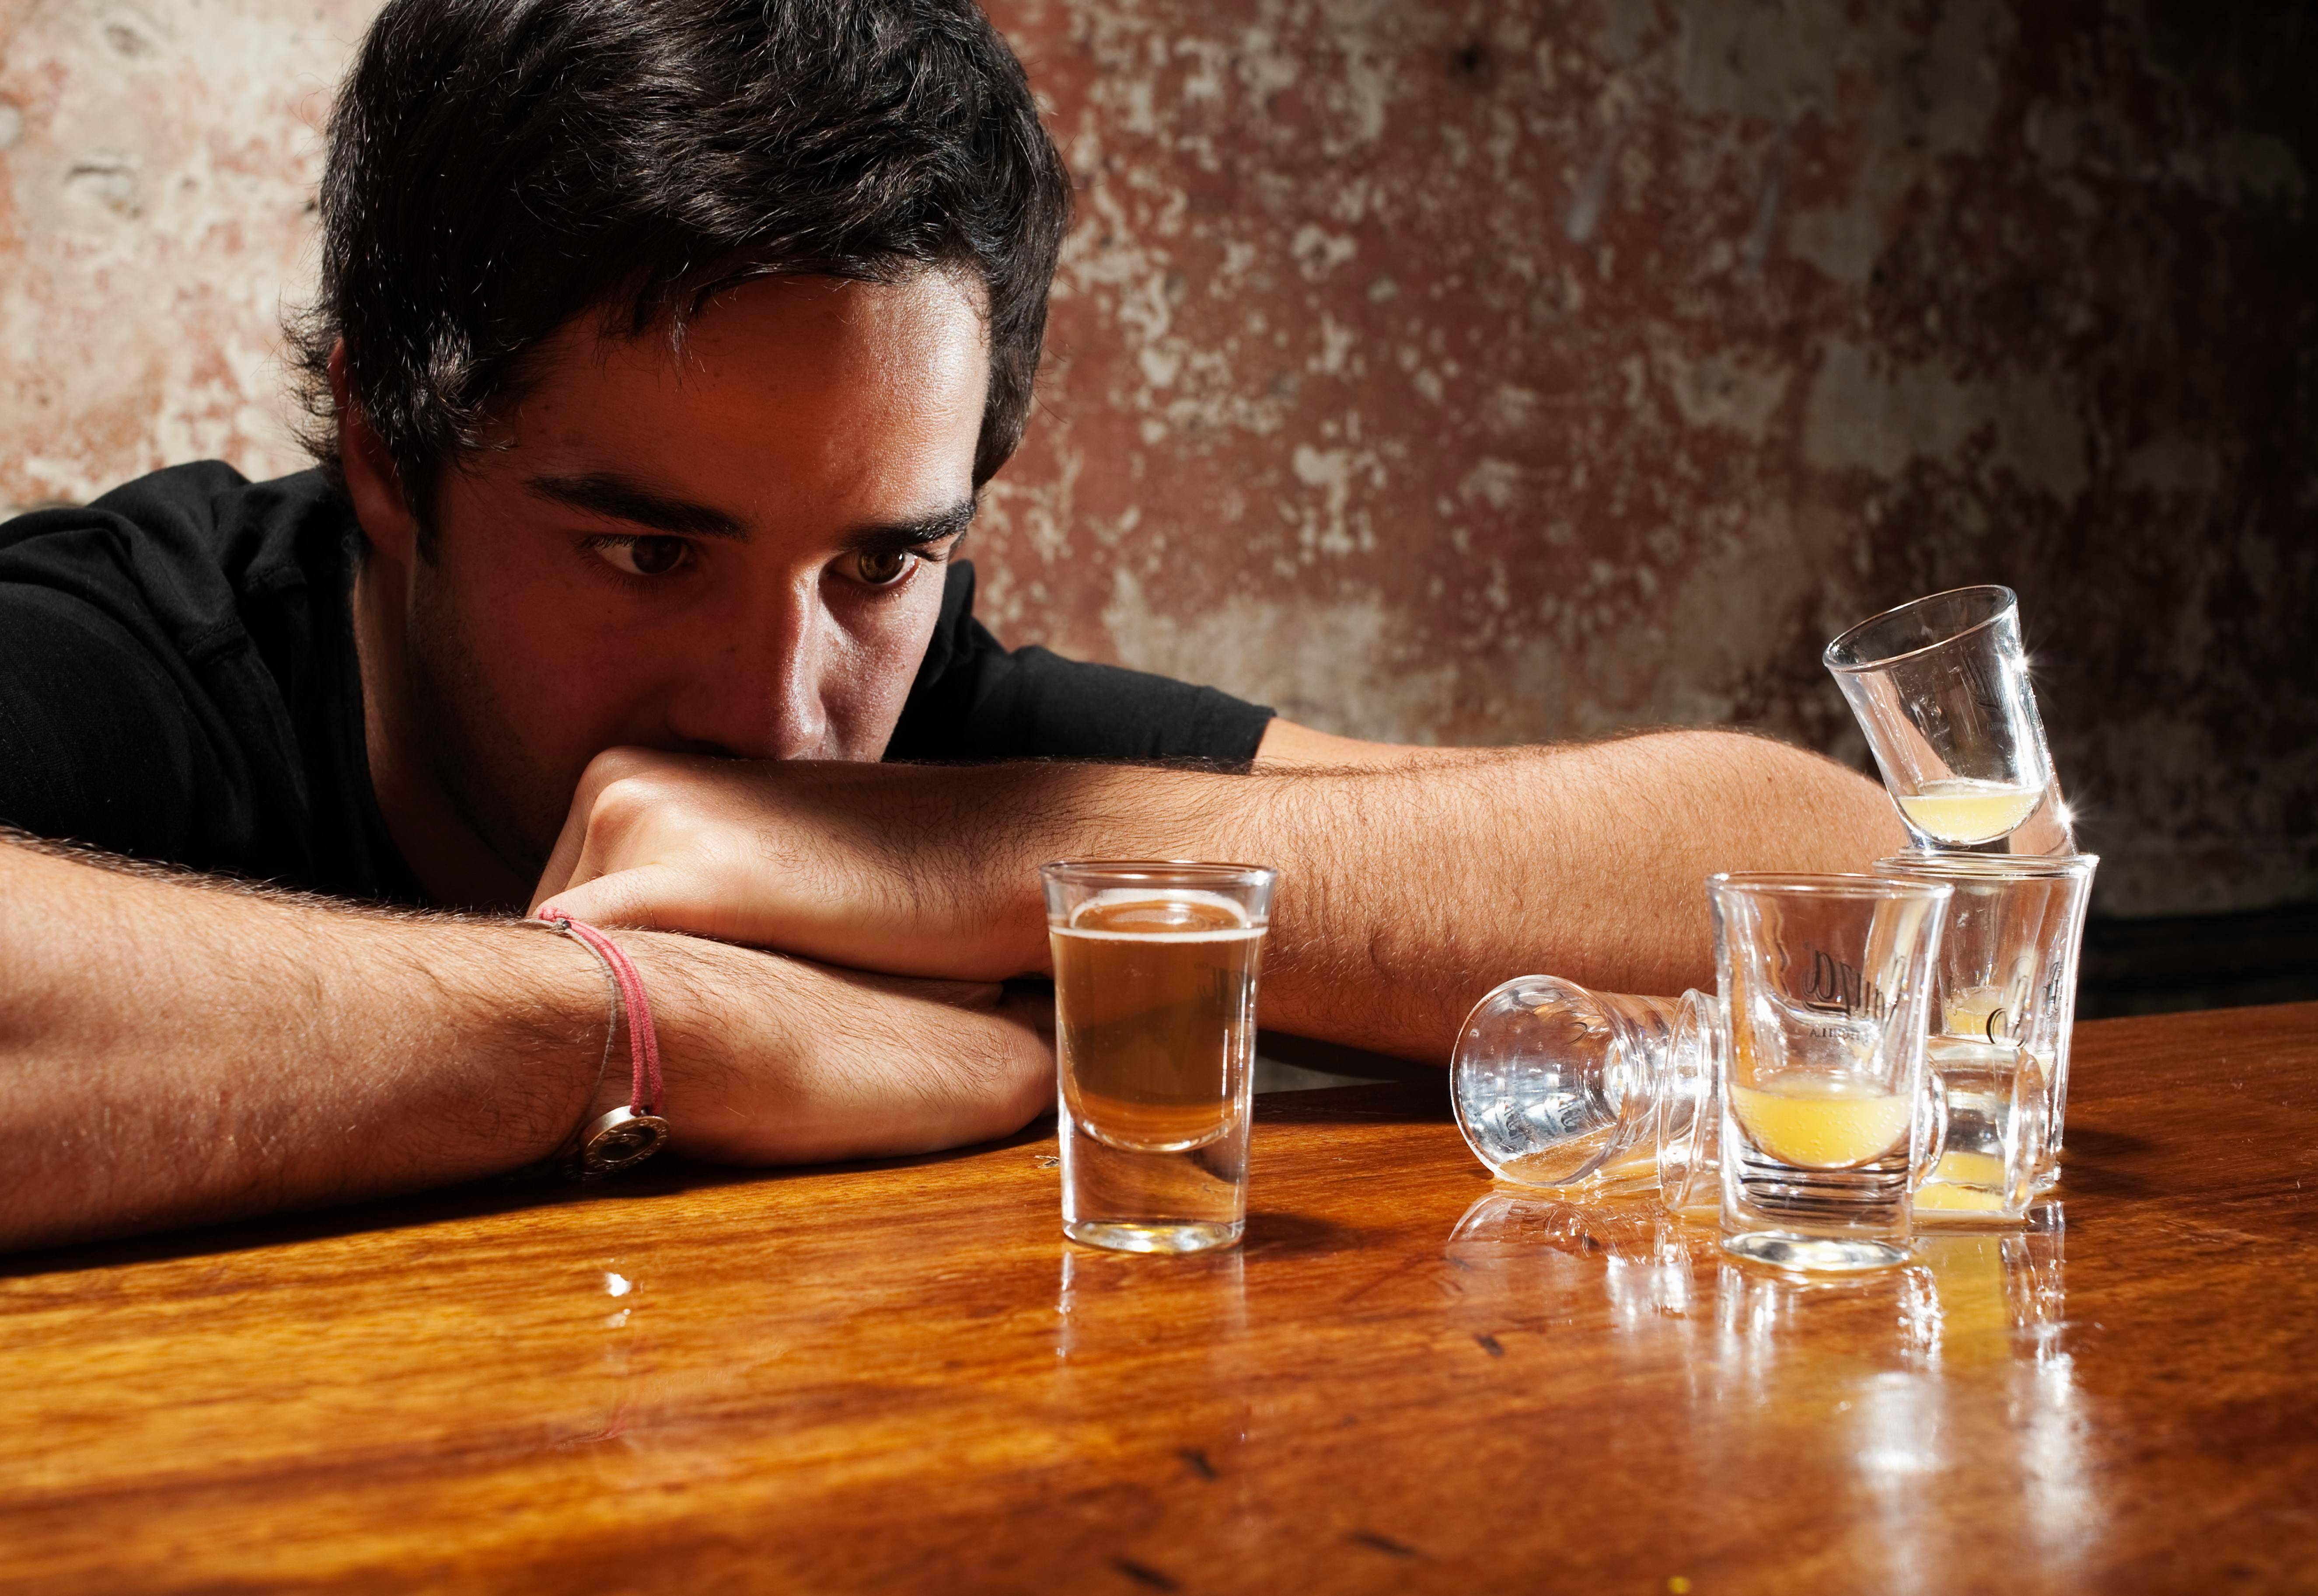 Правила безопасного застолья: как пить и не пьянеть, чем закусывать водку